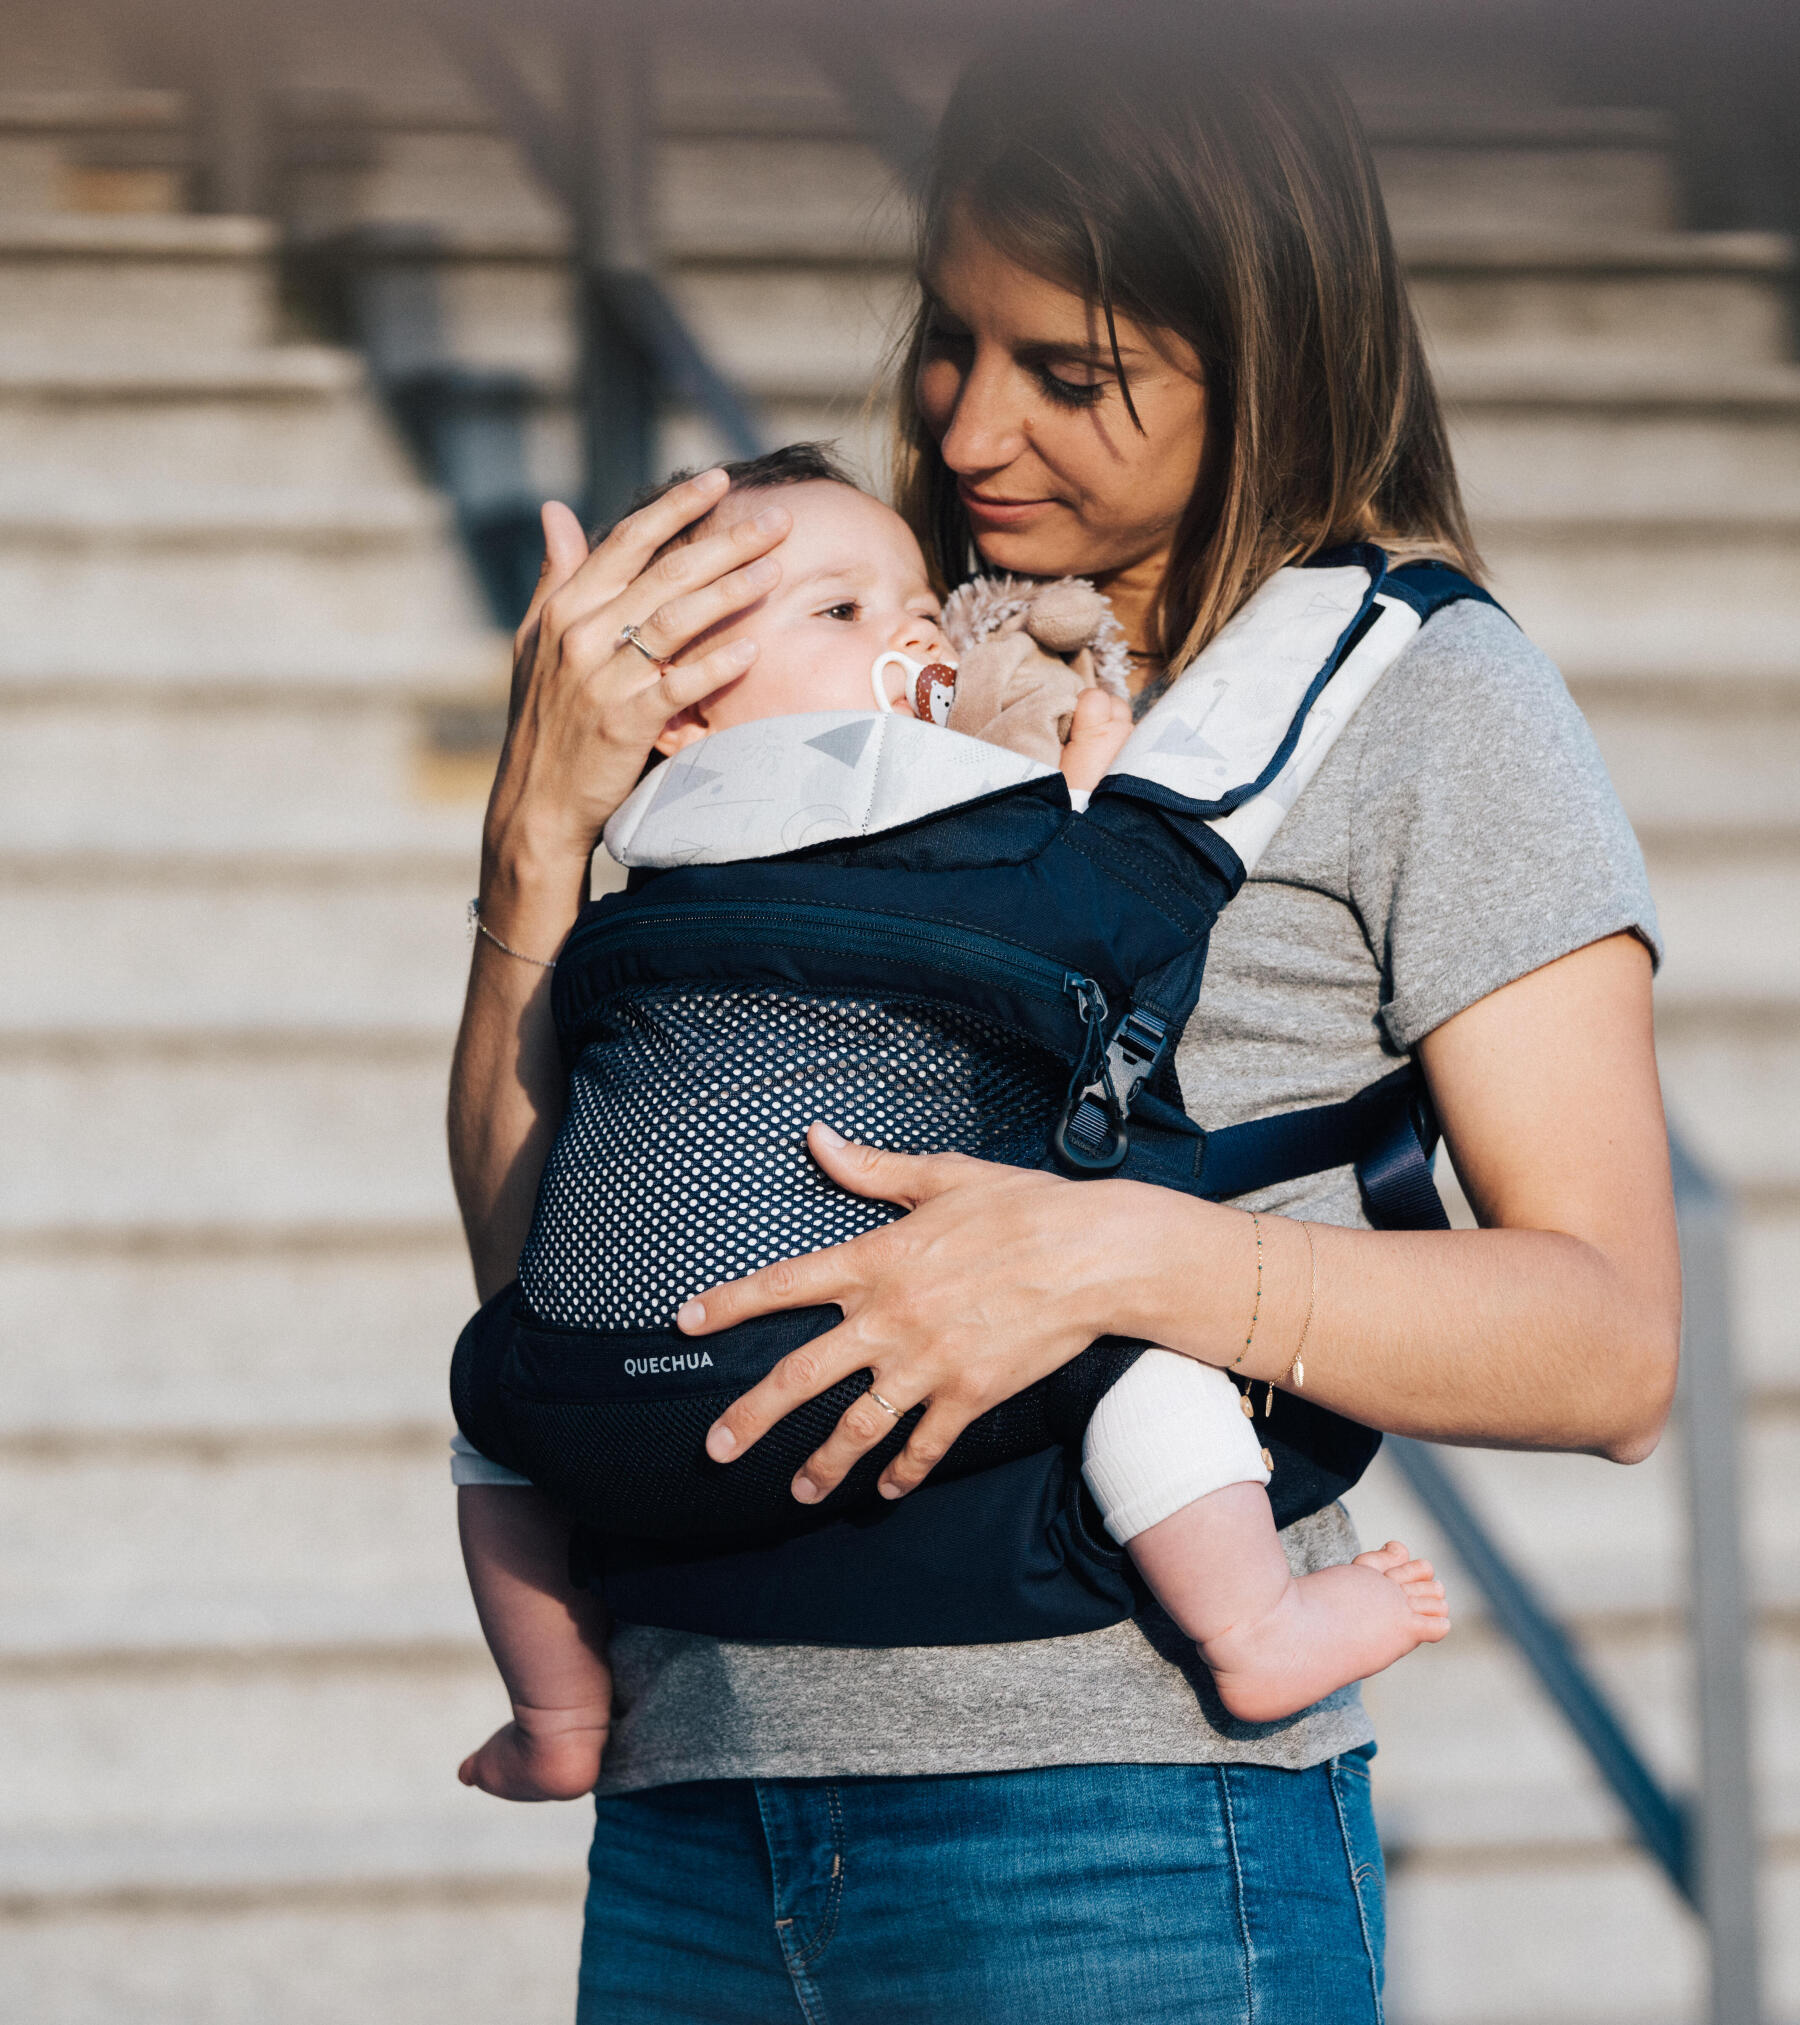 Porte-bébé, portage et astuces » Les astuces pour bien porter bébé